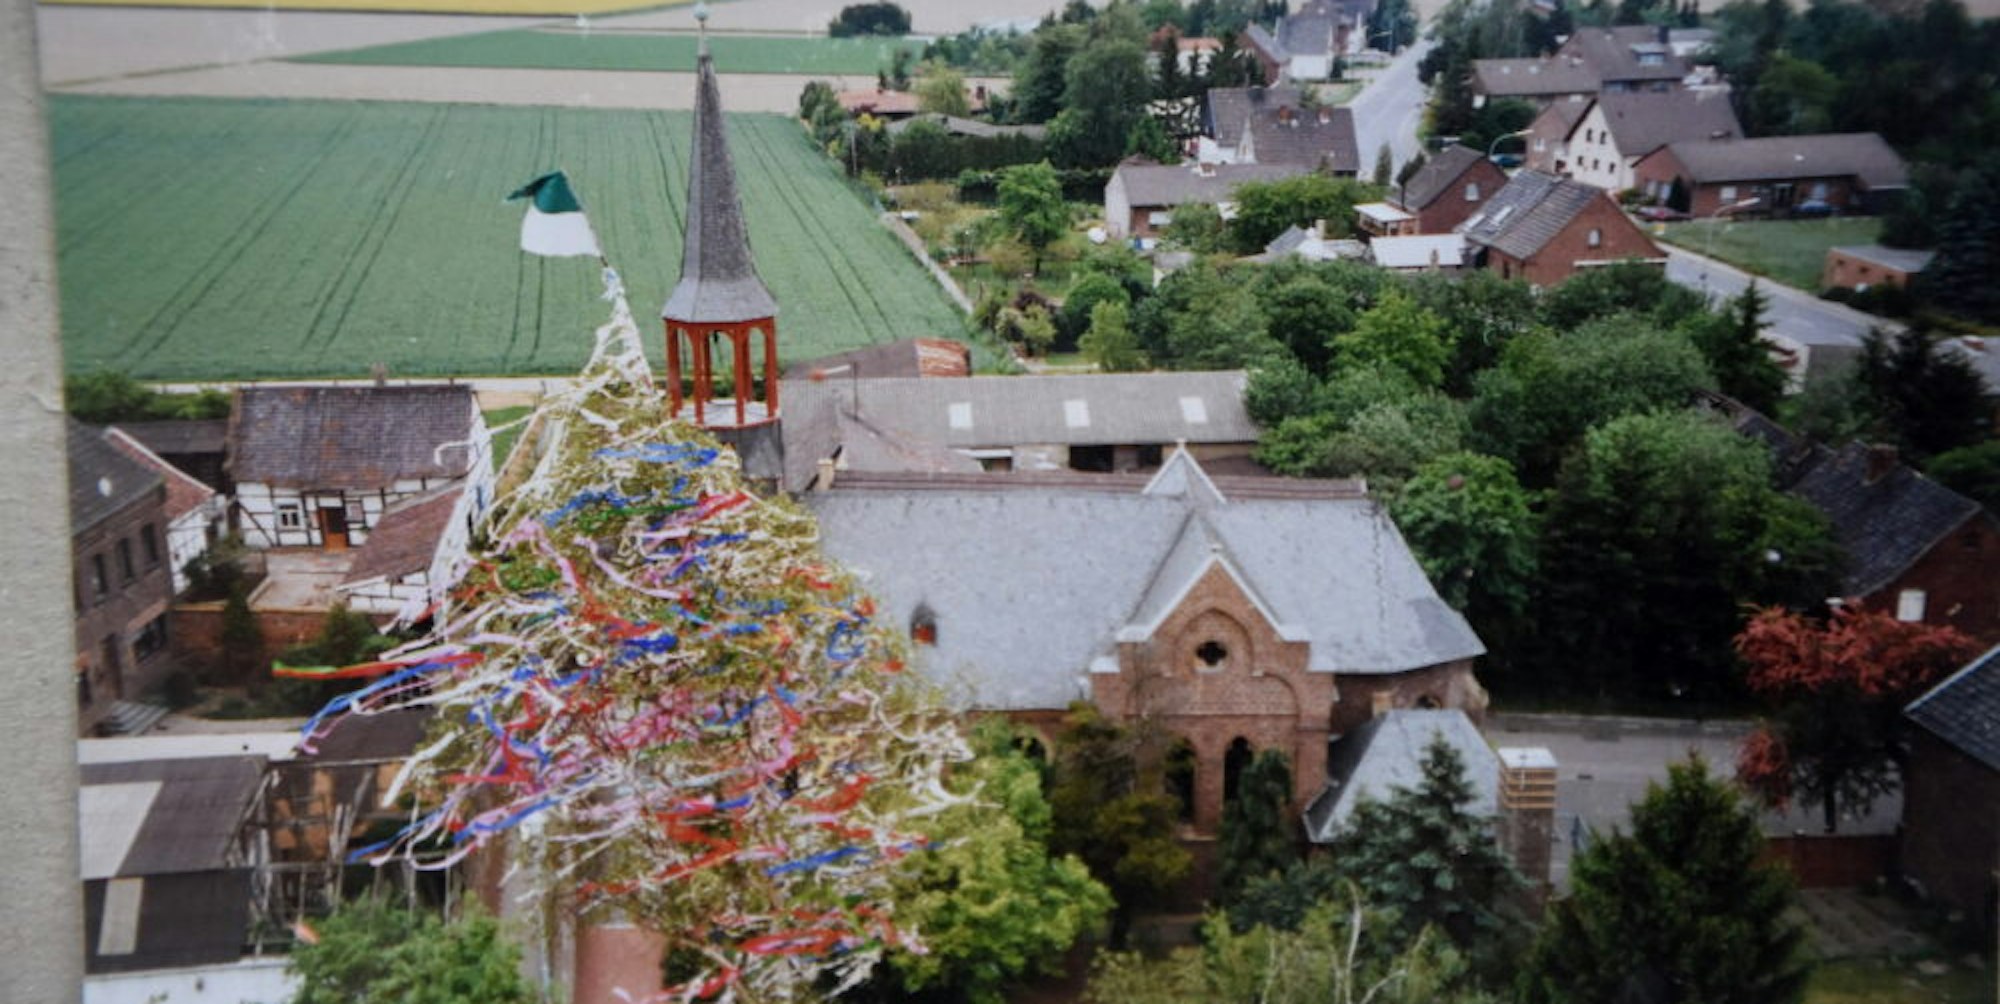 Das letzte Maifest wurde 1997 im alten Etzweiler gefeiert.